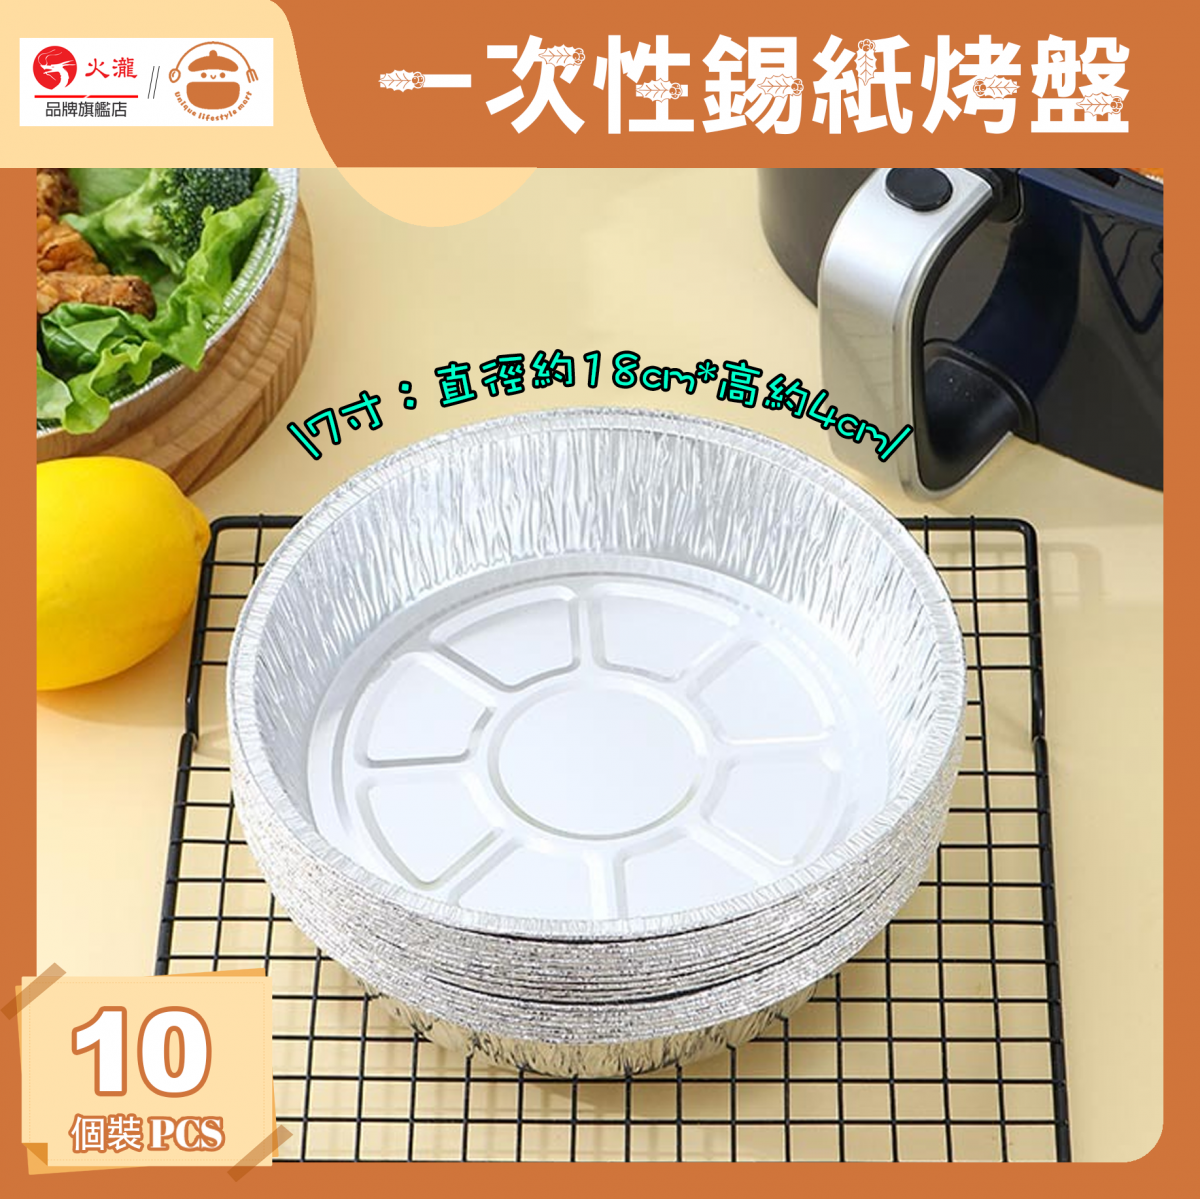 Disposable tin foil baking tray [10 pieces] - air fryer baking tray | picnic tray | oven tin foil | 